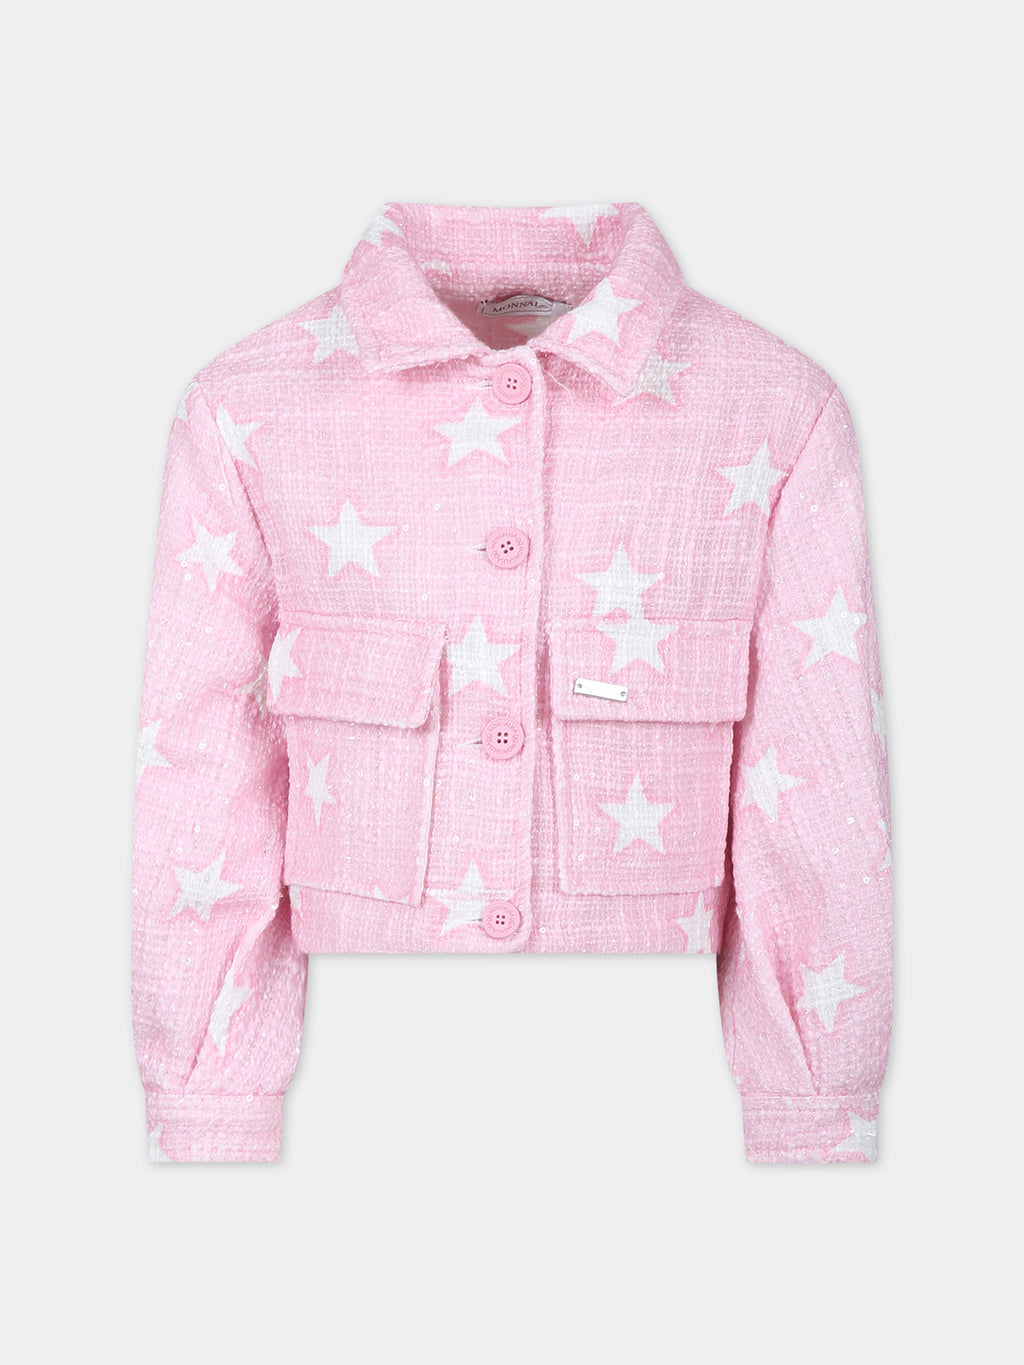 Veste en jean rose pour fille avec étoiles